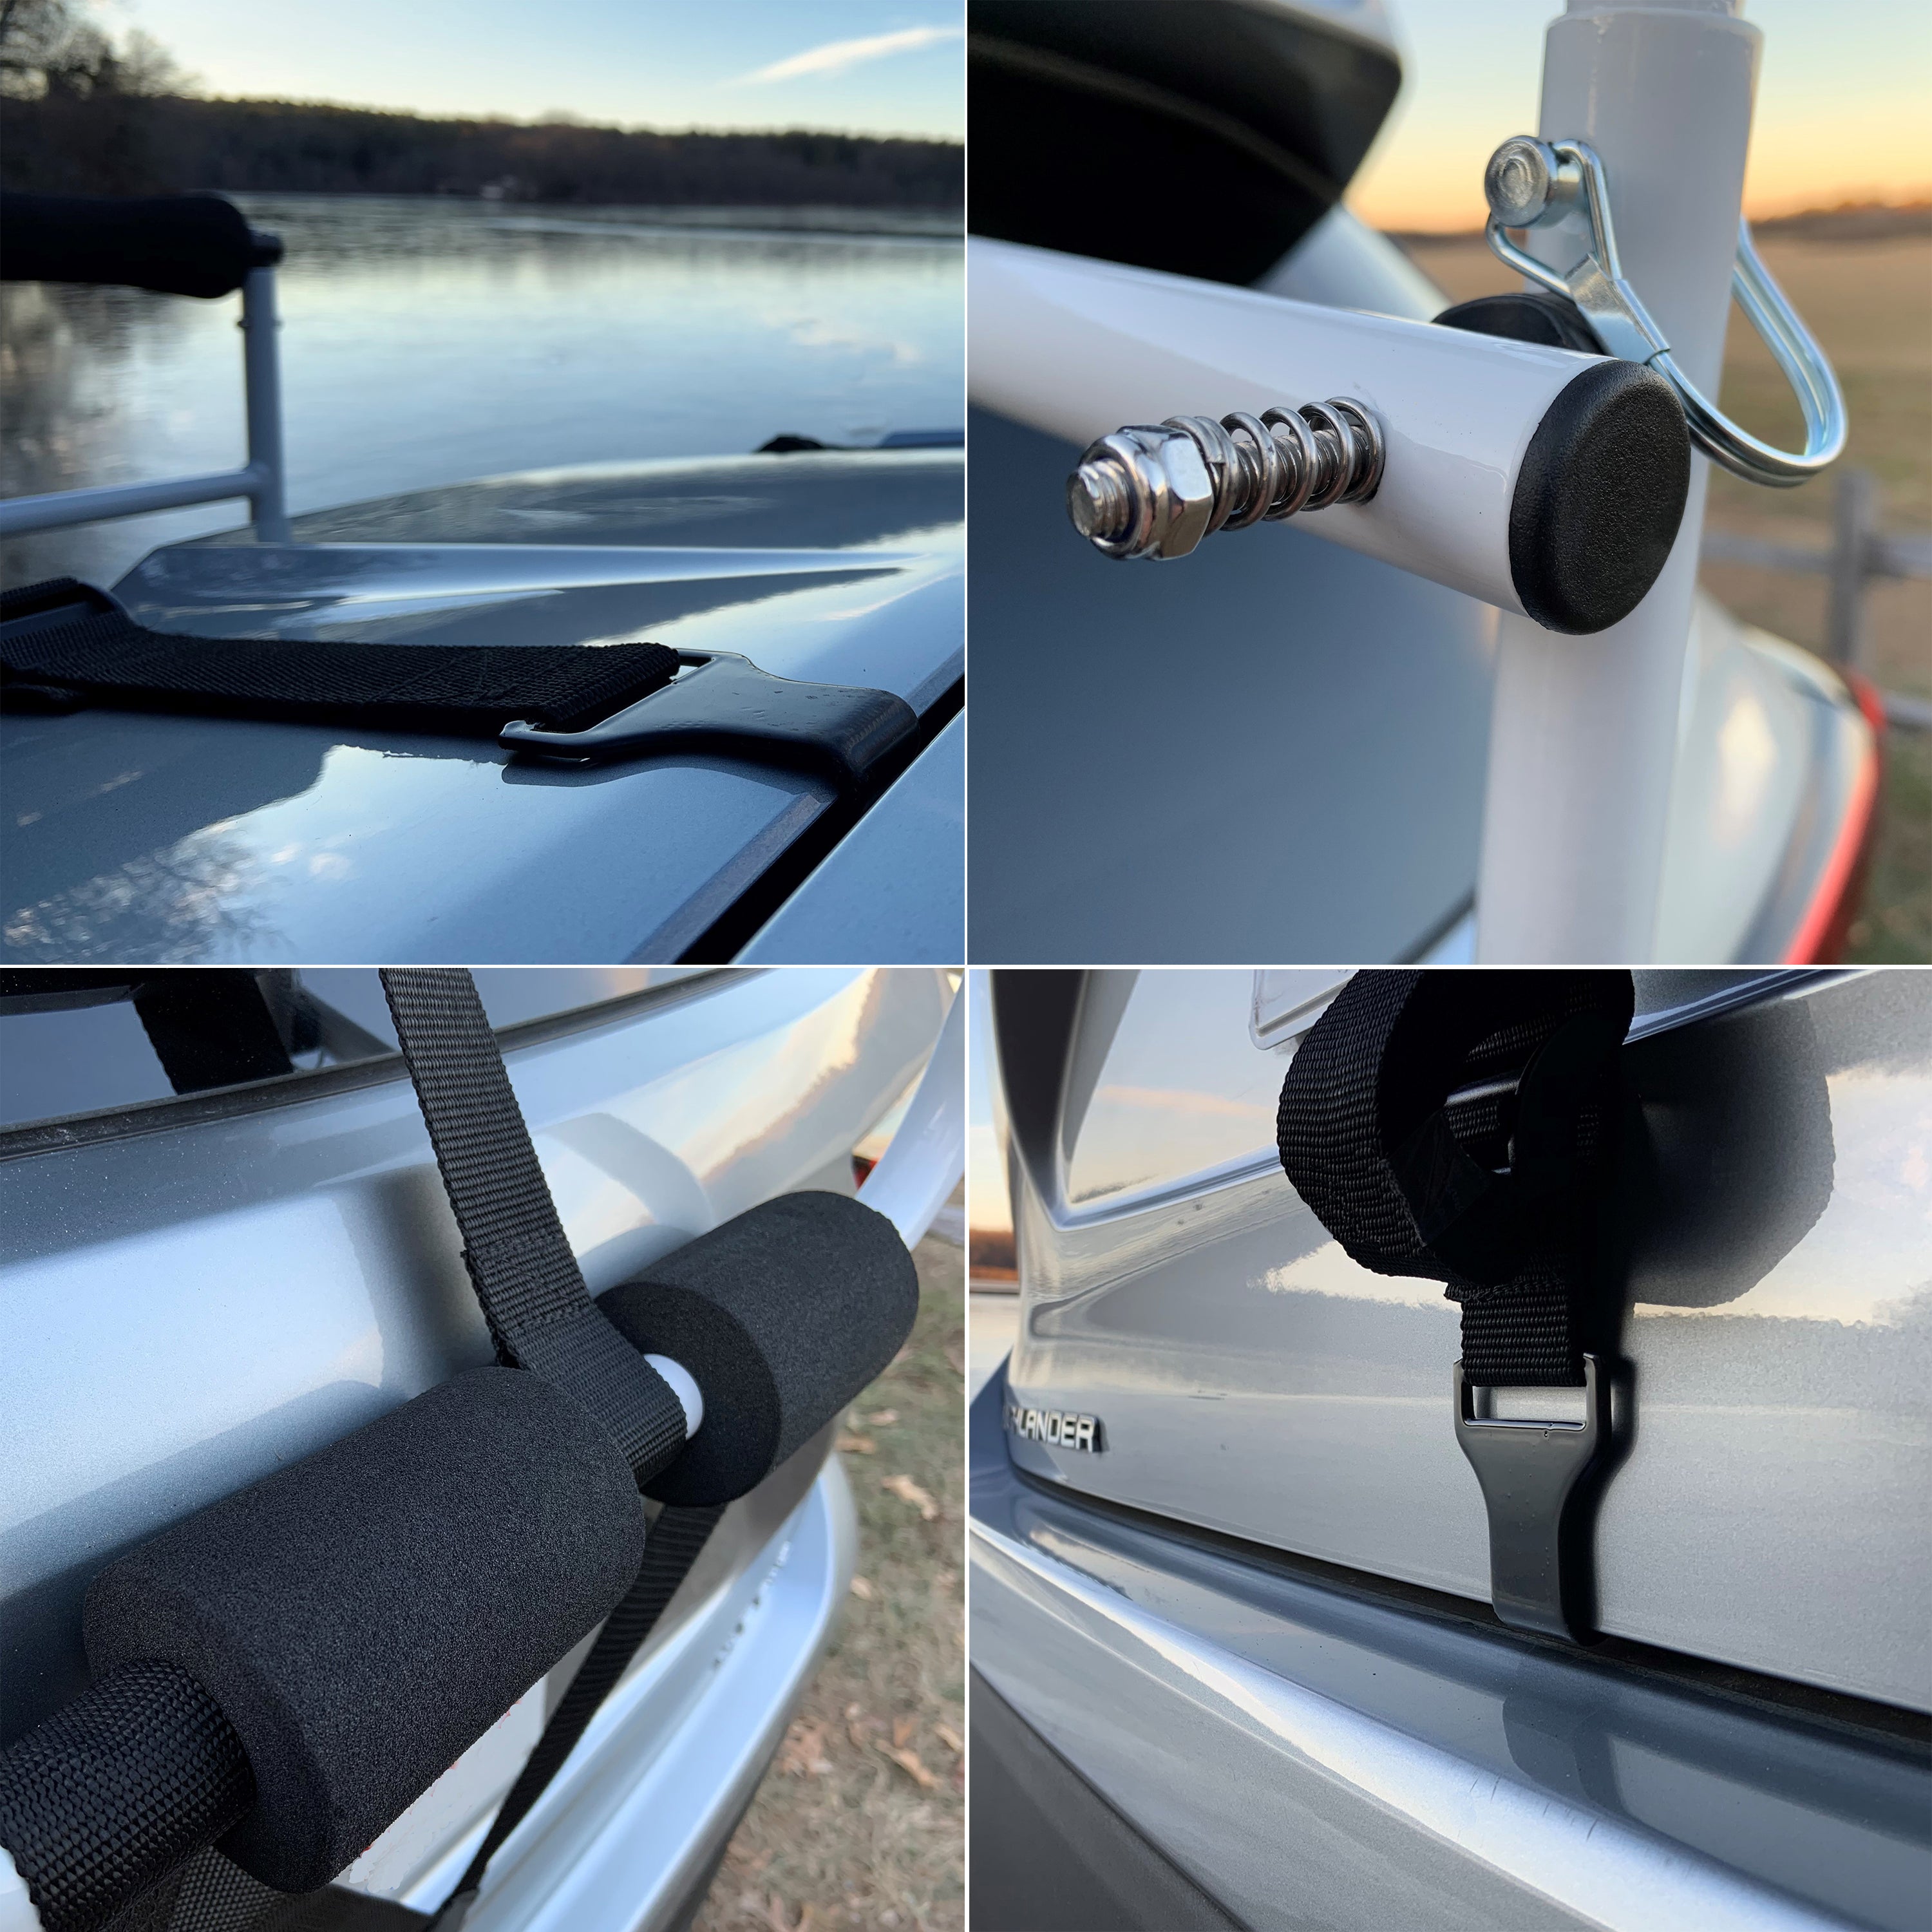 HUIMENG Kayak Roller - Load Assist Prevent Sideslip with Adjustable, Silver